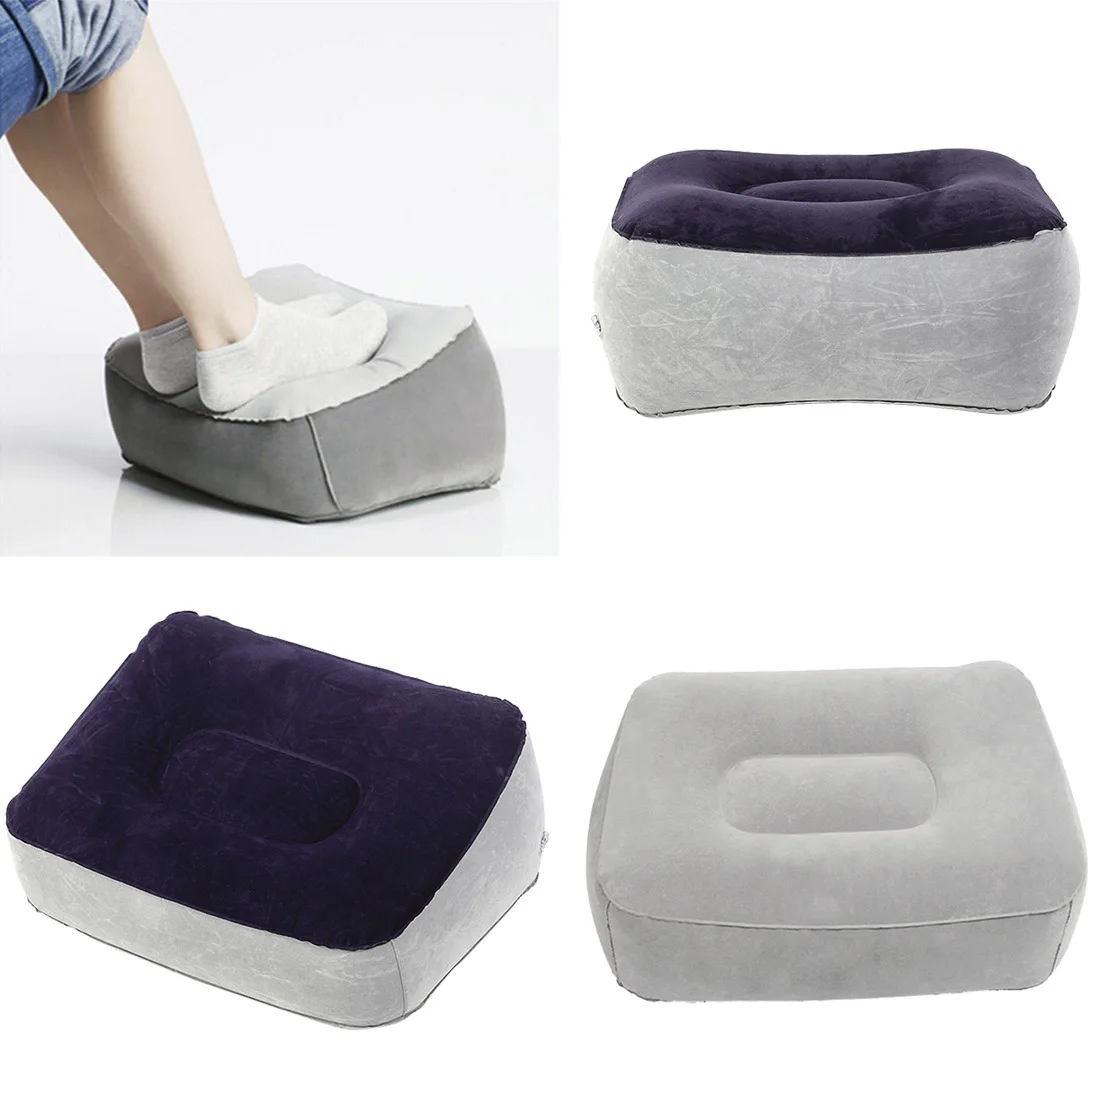 Мягкая подушка для ног, ПВХ, надувная подушка для ног, подушка для дома, расслабляющая, офисная, для ног, воздушный инструмент, для отдыха, для путешествий